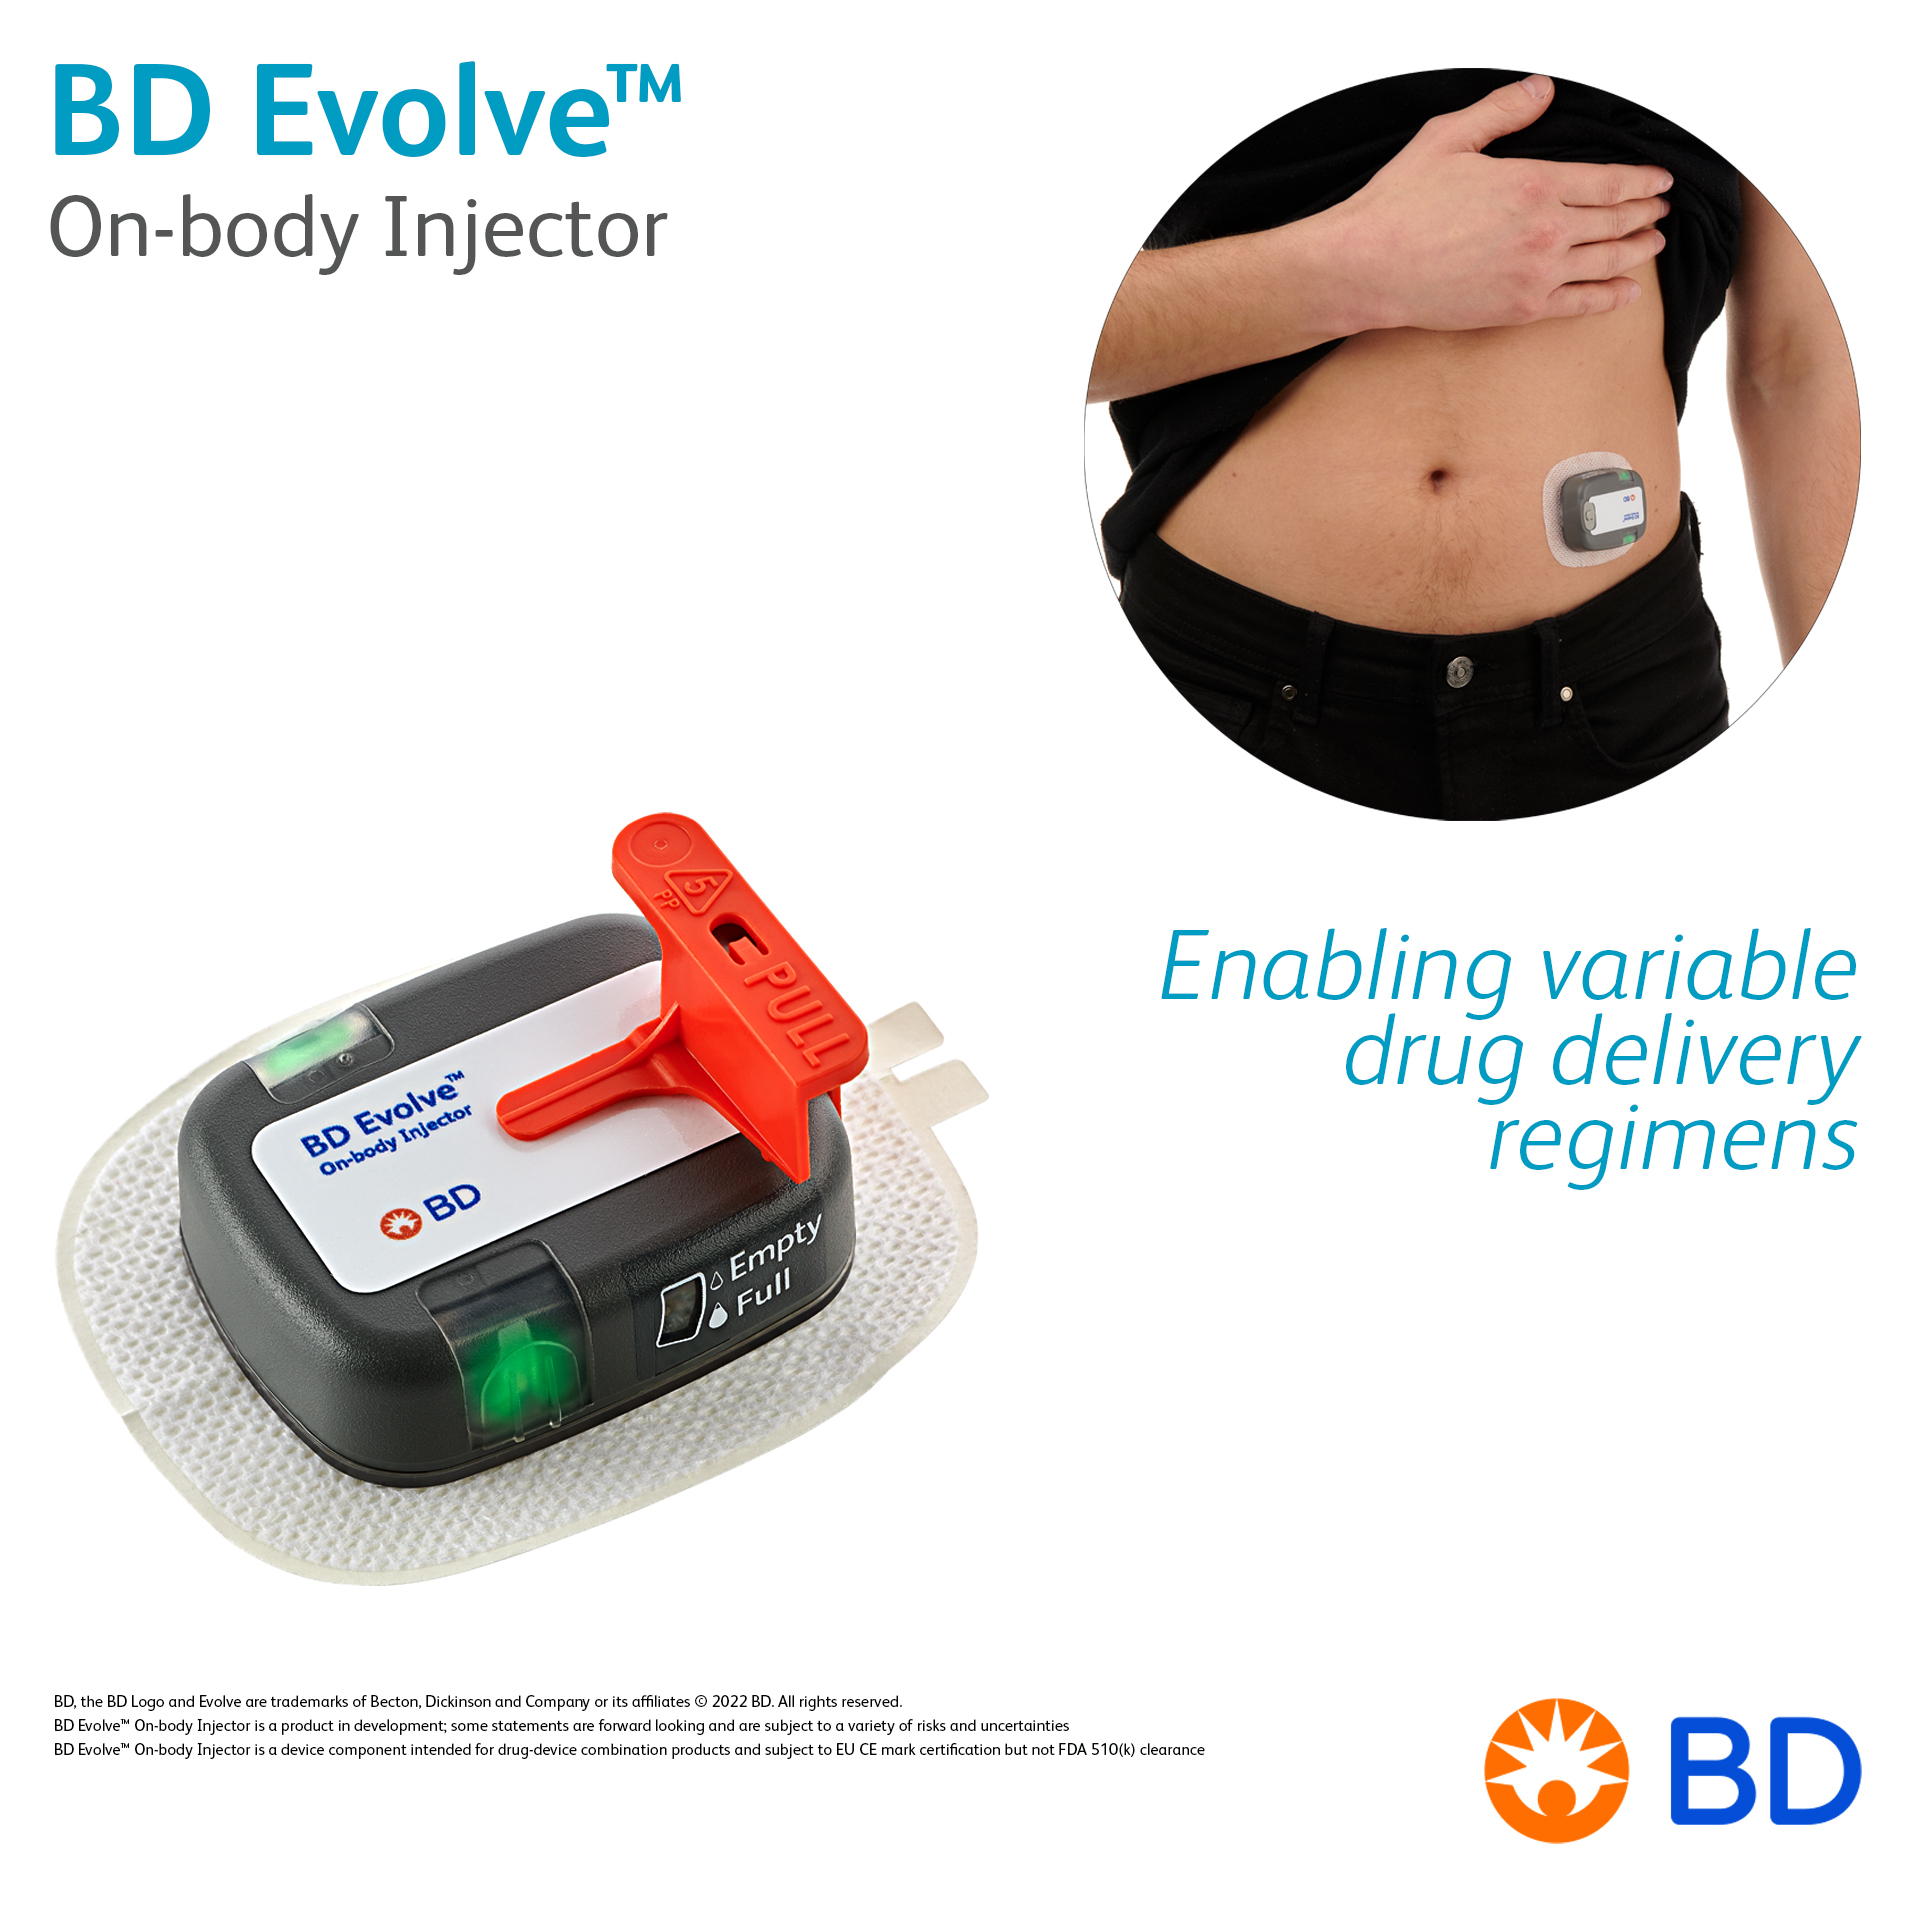 BD Evolve™ On-body Injector - Enabling variable drug delivery regimens